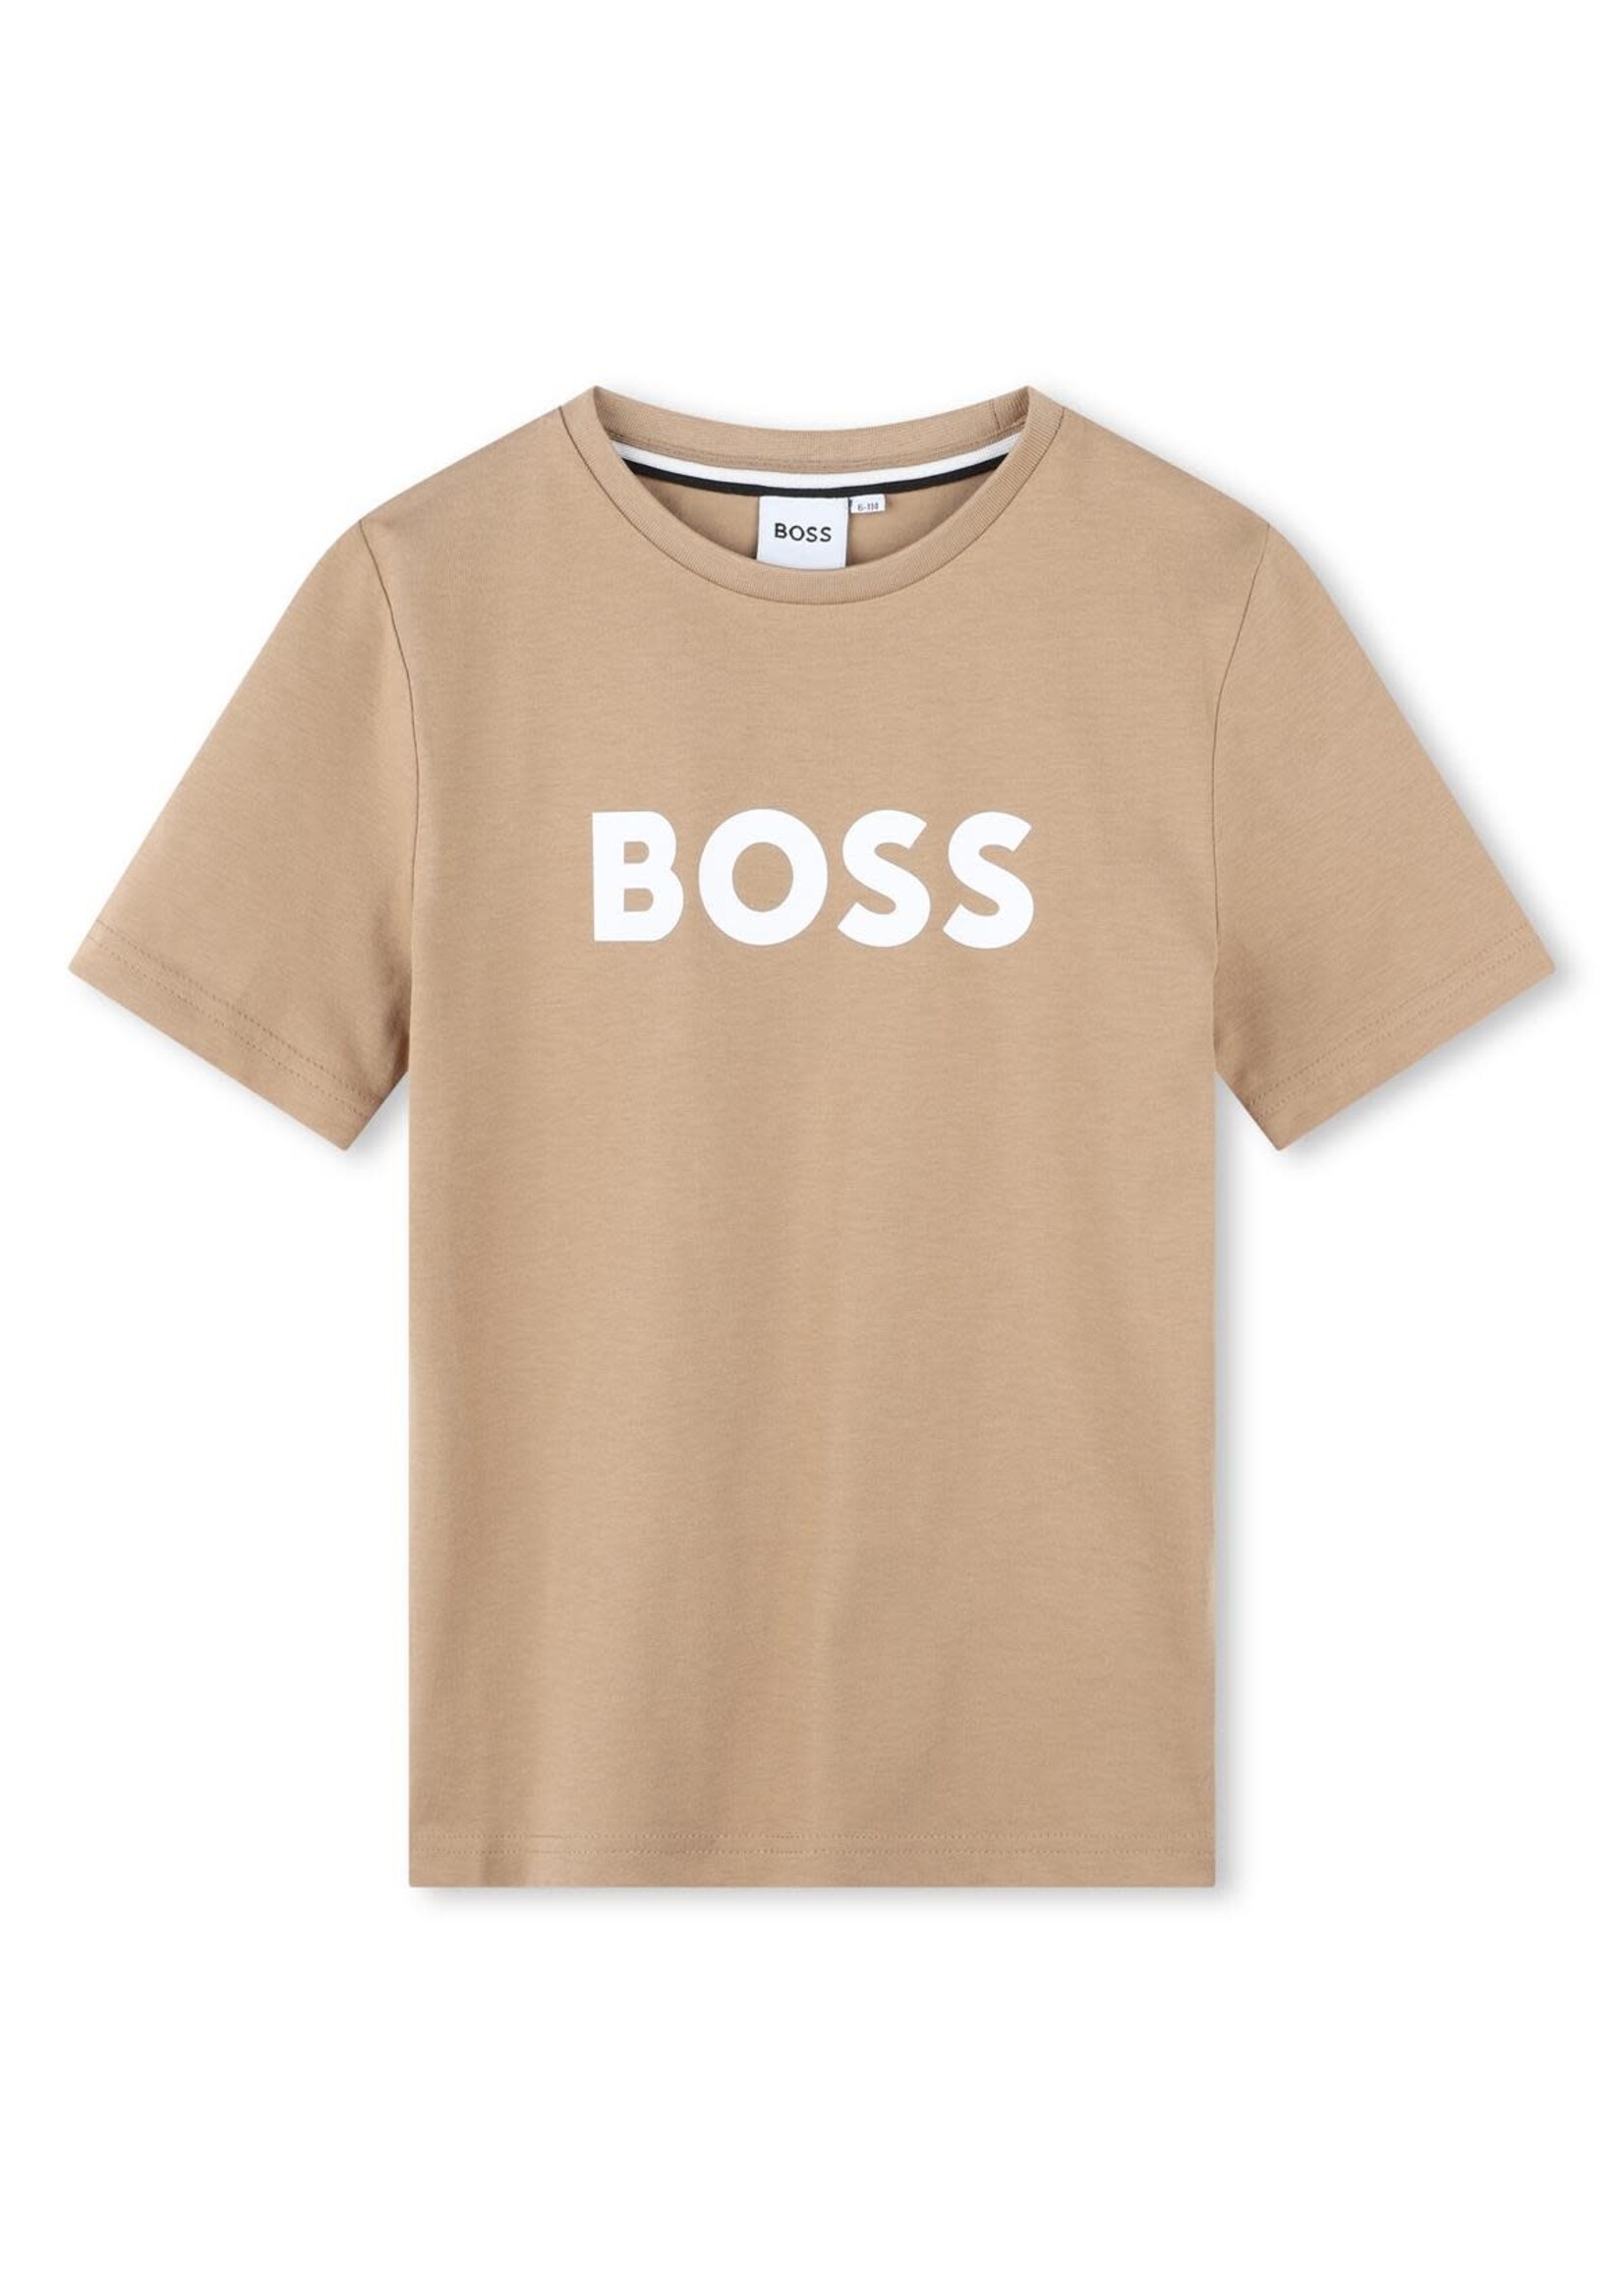 Boss Boss T-SHIRT KORTE MOUWEN J50718 KOEKJE